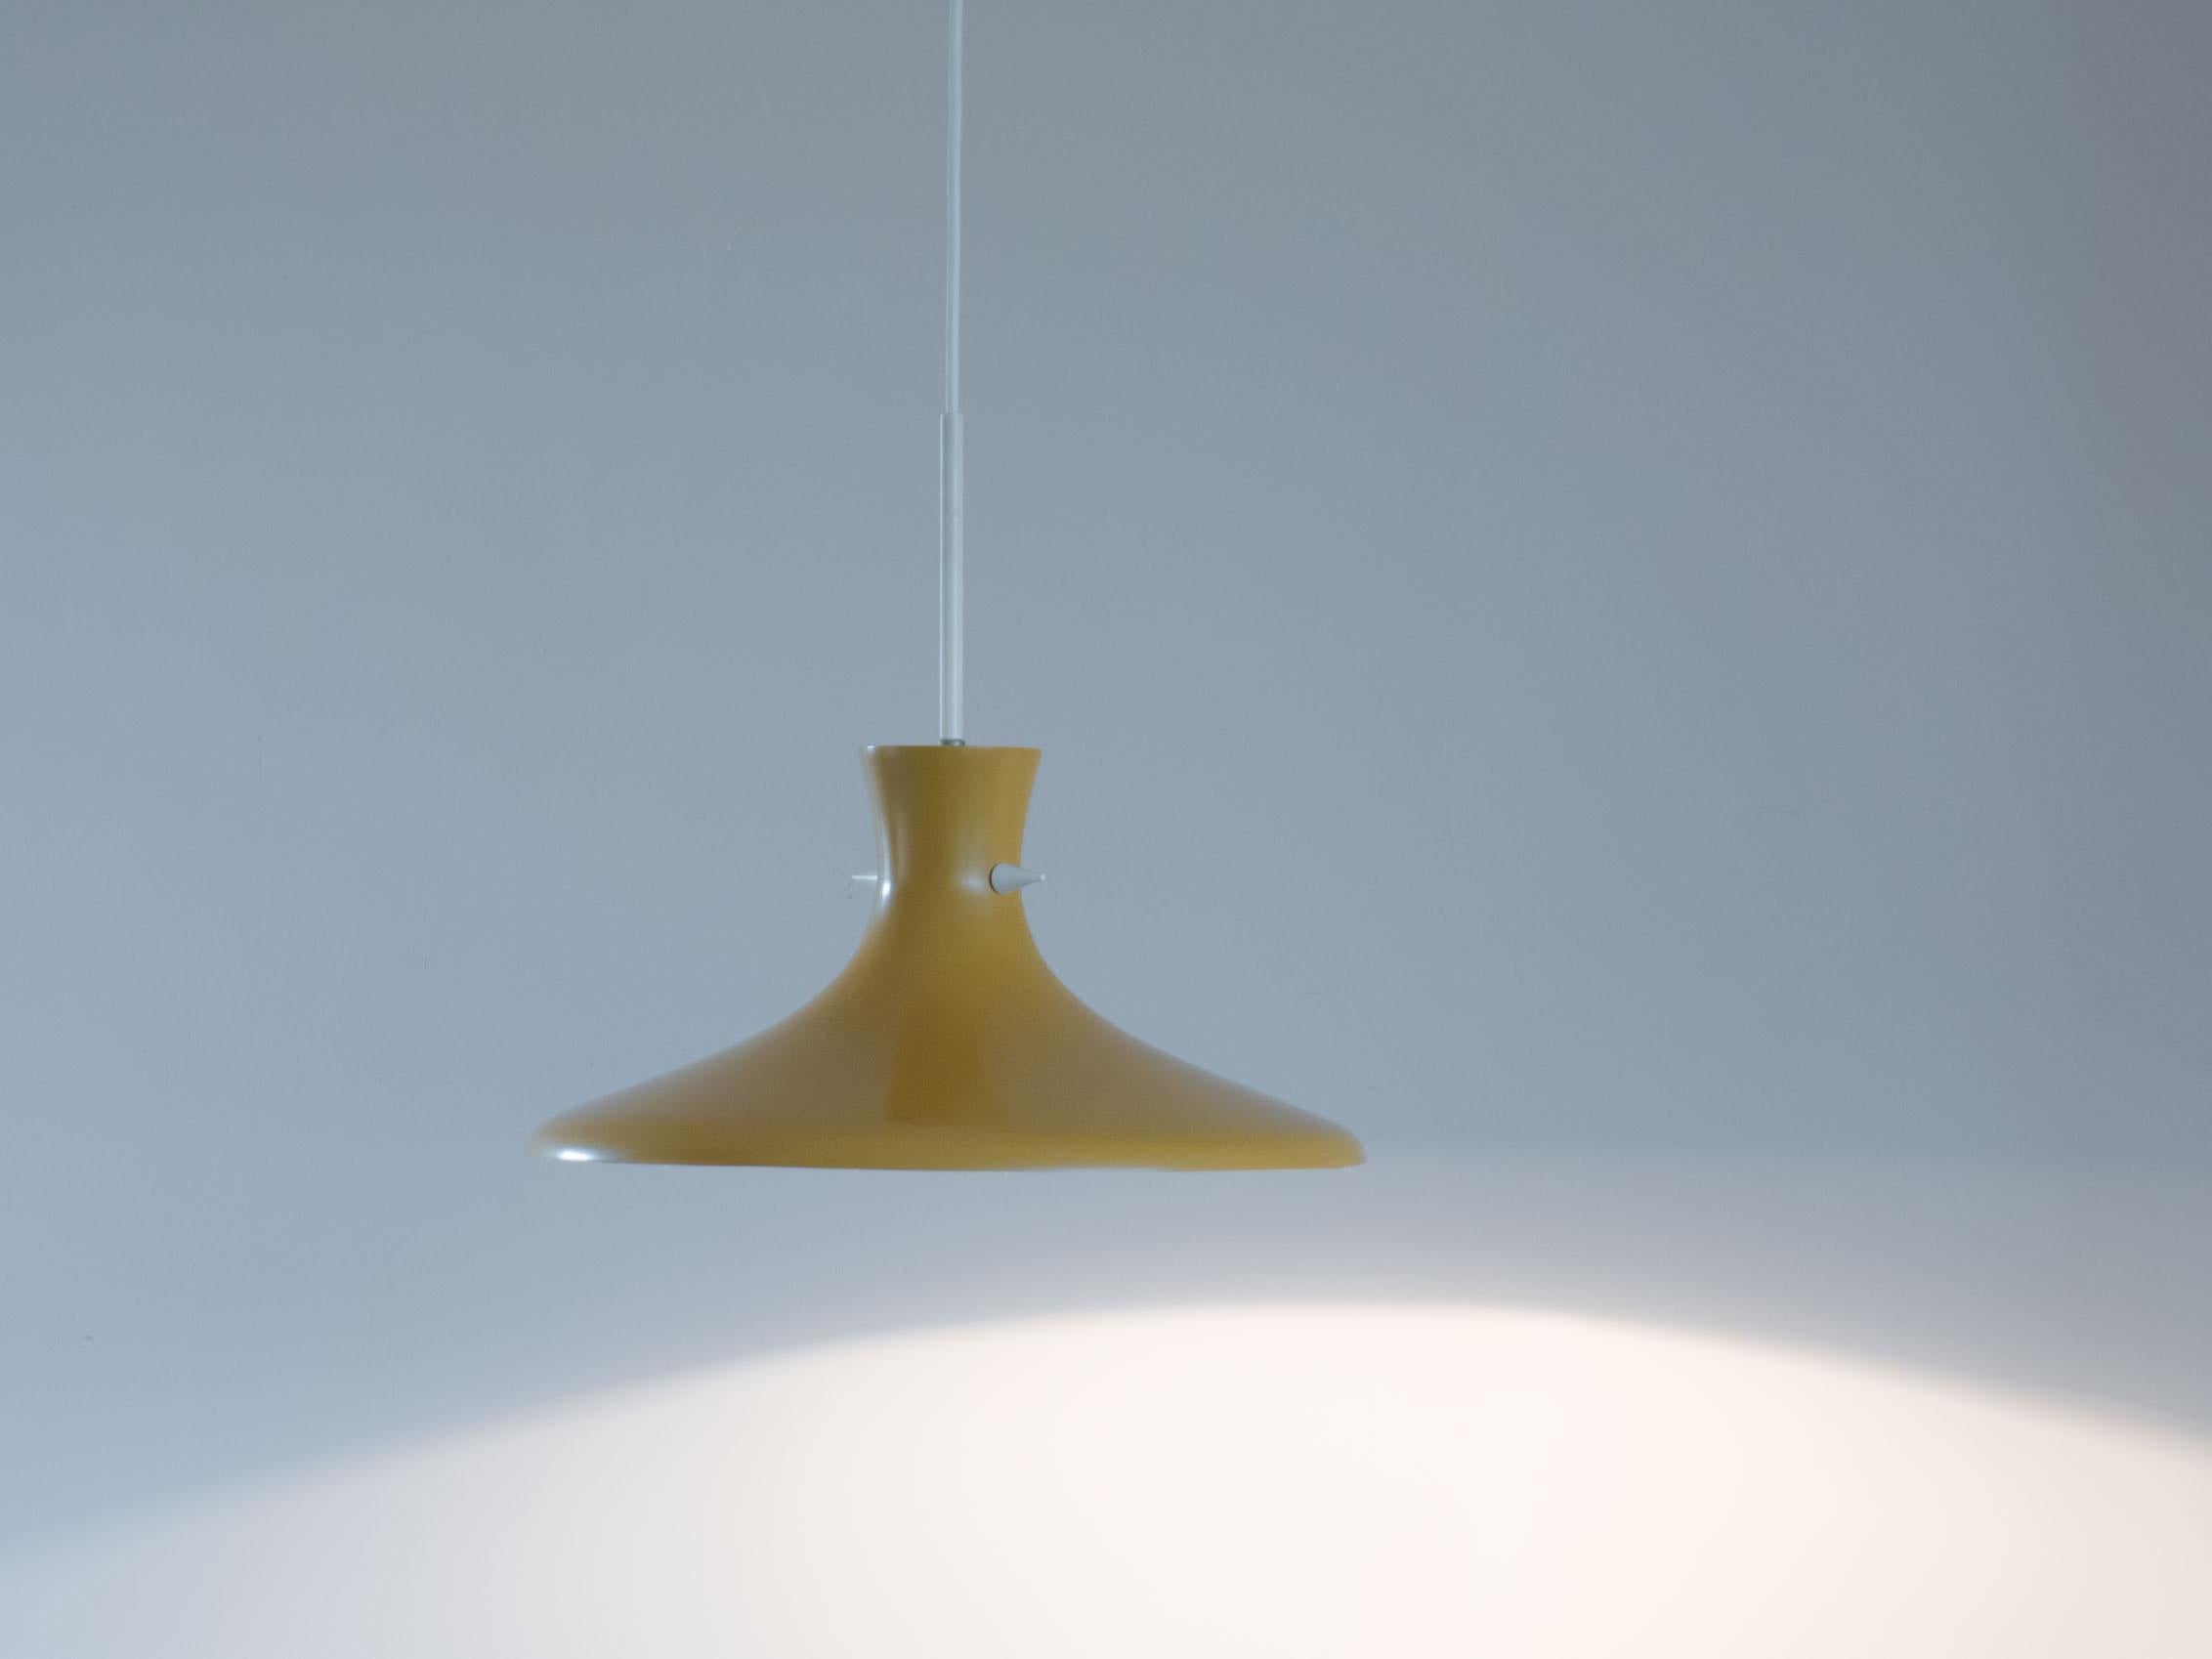 Suspension de forme organique de couleur ocre-jaune vintage.

Cette lampe est conçue de manière très minimale, l'abat-jour comporte deux petites pointes blanches qui accentuent la forme de l'abat-jour.

Cette lampe est en très bon état. L'abat-jour